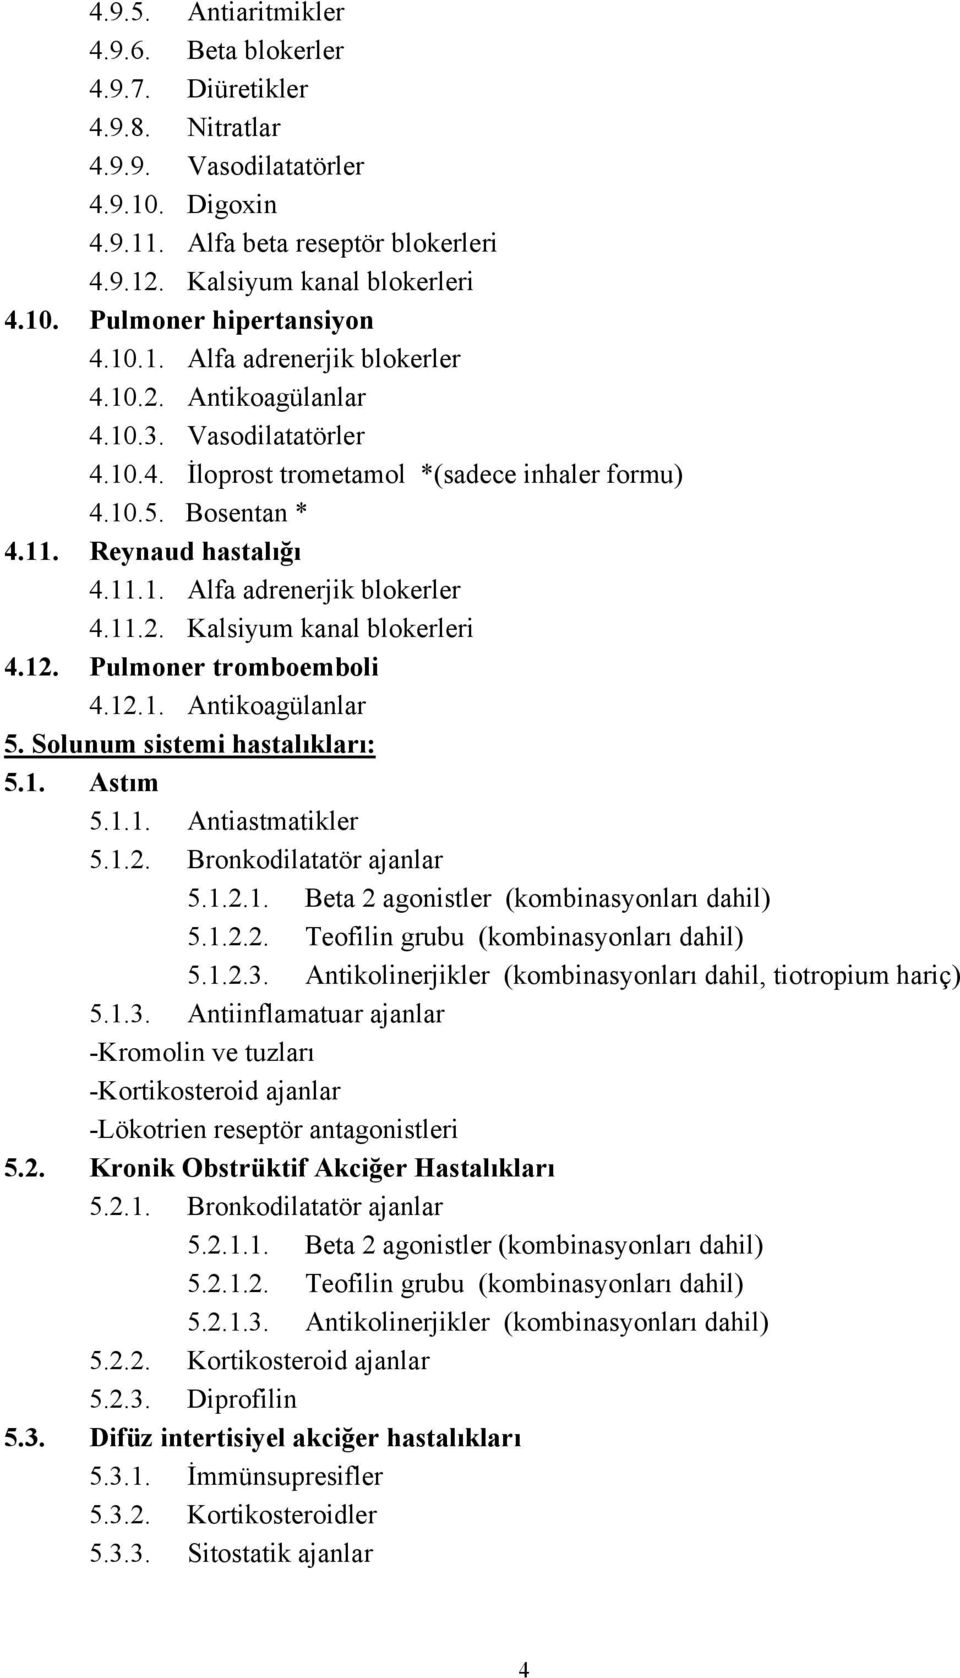 12. Pulmoner tromboemboli 4.12.1. Antikoagülanlar 5. Solunum sistemi hastalıkları: 5.1. Astım 5.1.1. Antiastmatikler 5.1.2. Bronkodilatatör ajanlar 5.1.2.1. Beta 2 agonistler (kombinasyonları dahil) 5.